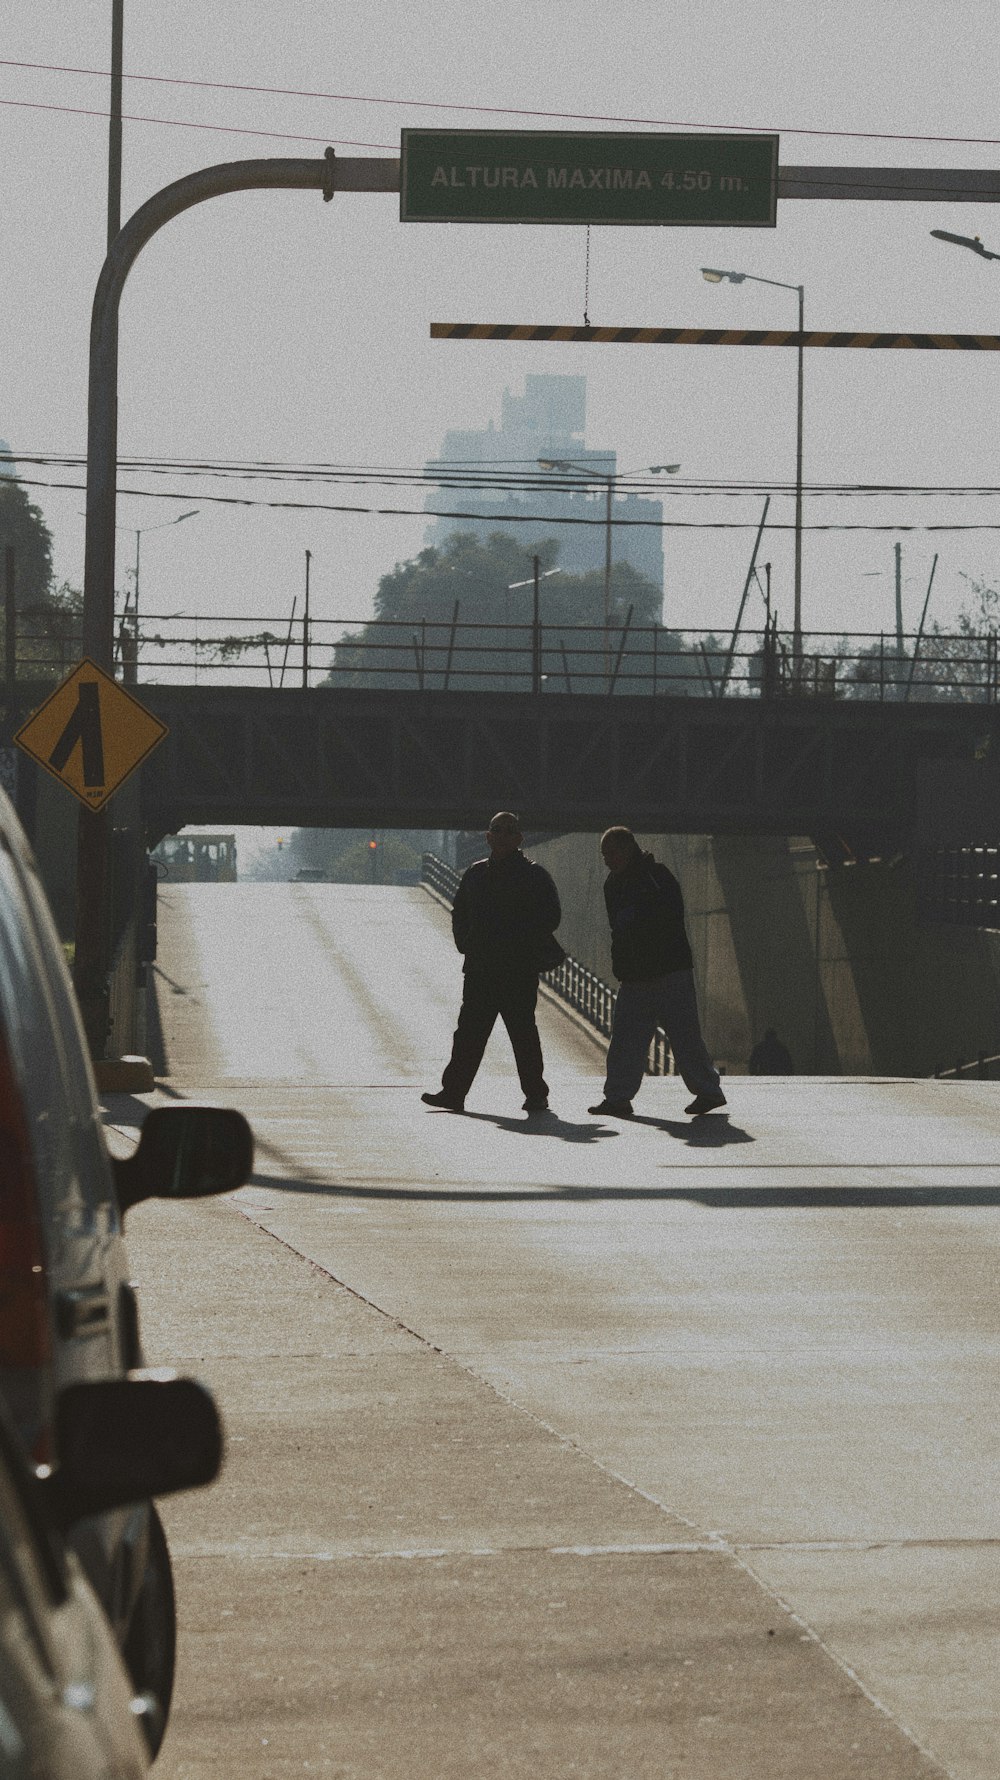 dois homens atravessam a rua